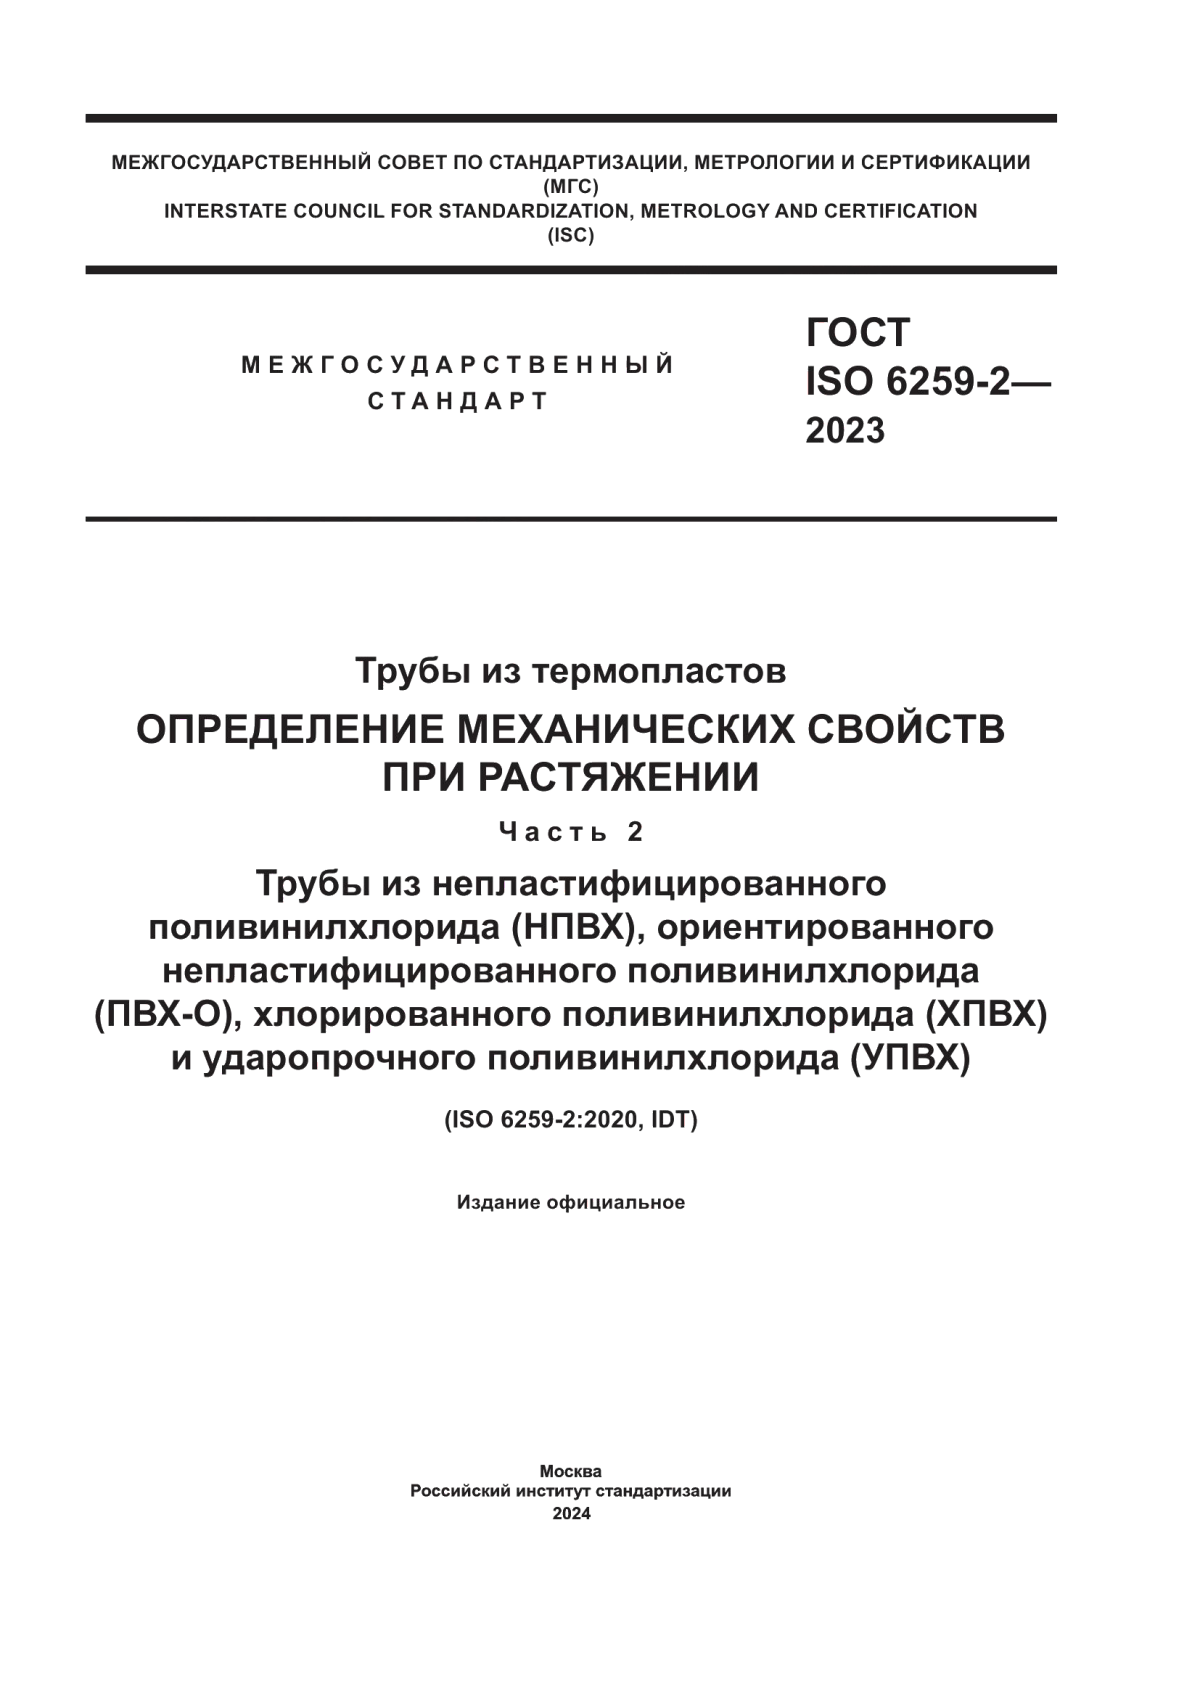 ГОСТ ISO 6259-2-2023 Трубы из термопластов. Определение механических свойств при растяжении. Часть 2. Трубы из непластифицированного поливинилхлорида (НПВХ), ориентированного непластифицированного поливинилхлорида (ПВХ-О), хлорированного поливинилхлорида (ХПВХ) и ударопрочного поливинилхлорида (УПВХ)